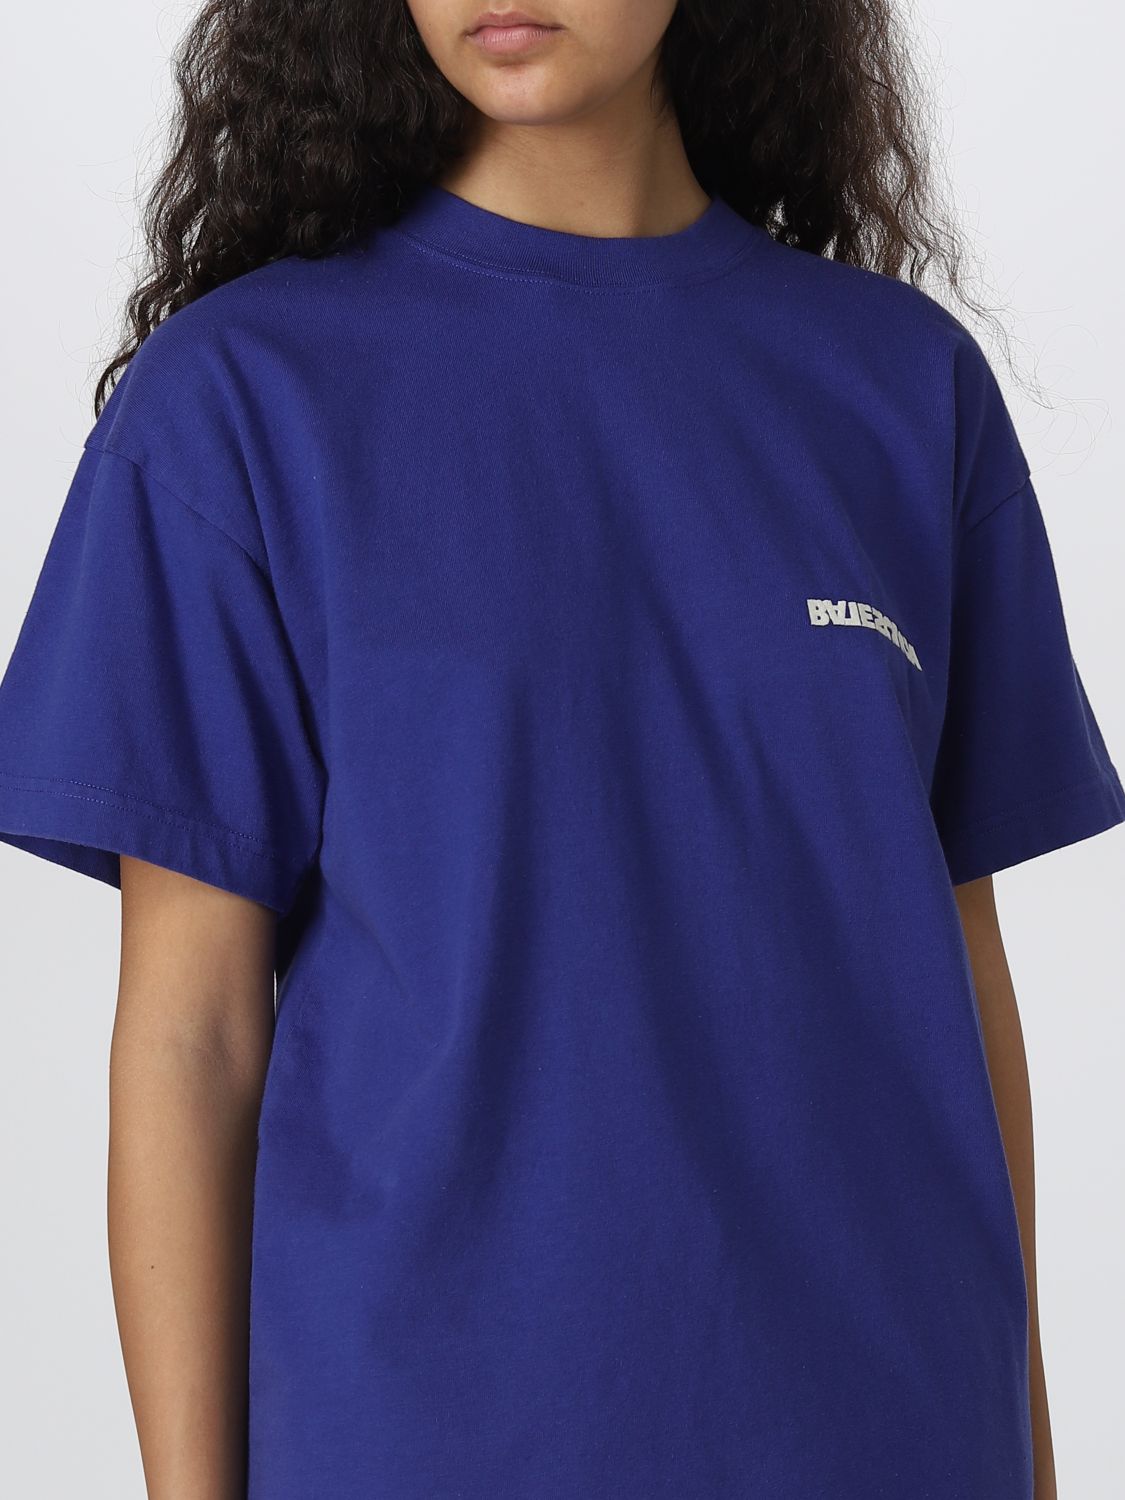 Camiseta para Azul Oscuro | Camiseta Balenciaga 612965TLVB3 en línea en GIGLIO.COM